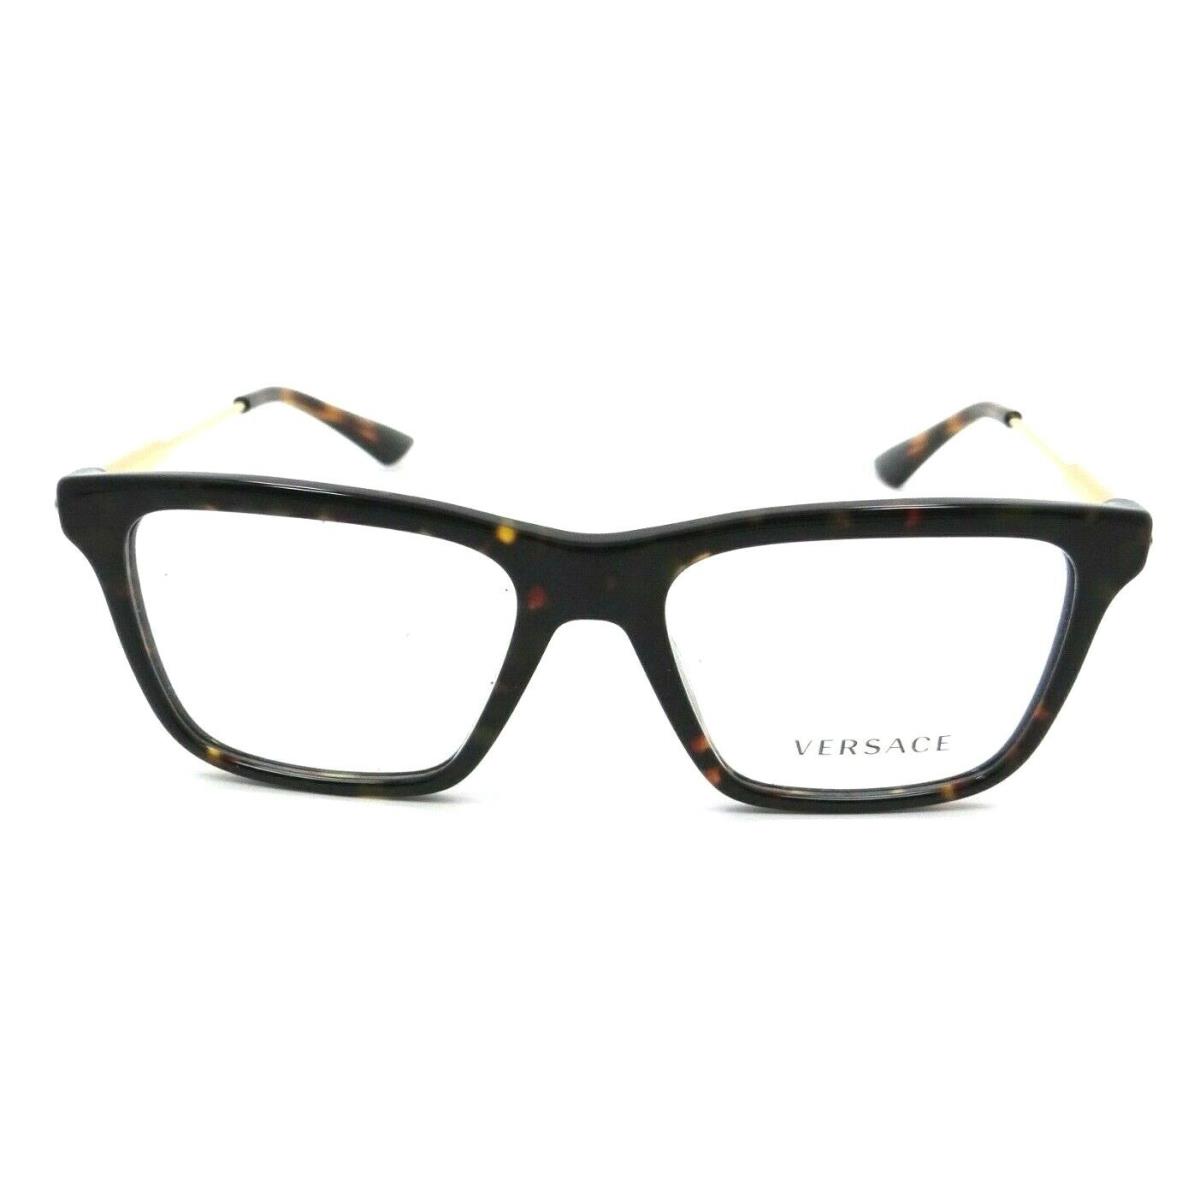 Versace Eyeglasses Frames VE 3308 108 53-17-145 Dark Havana Made in Italy